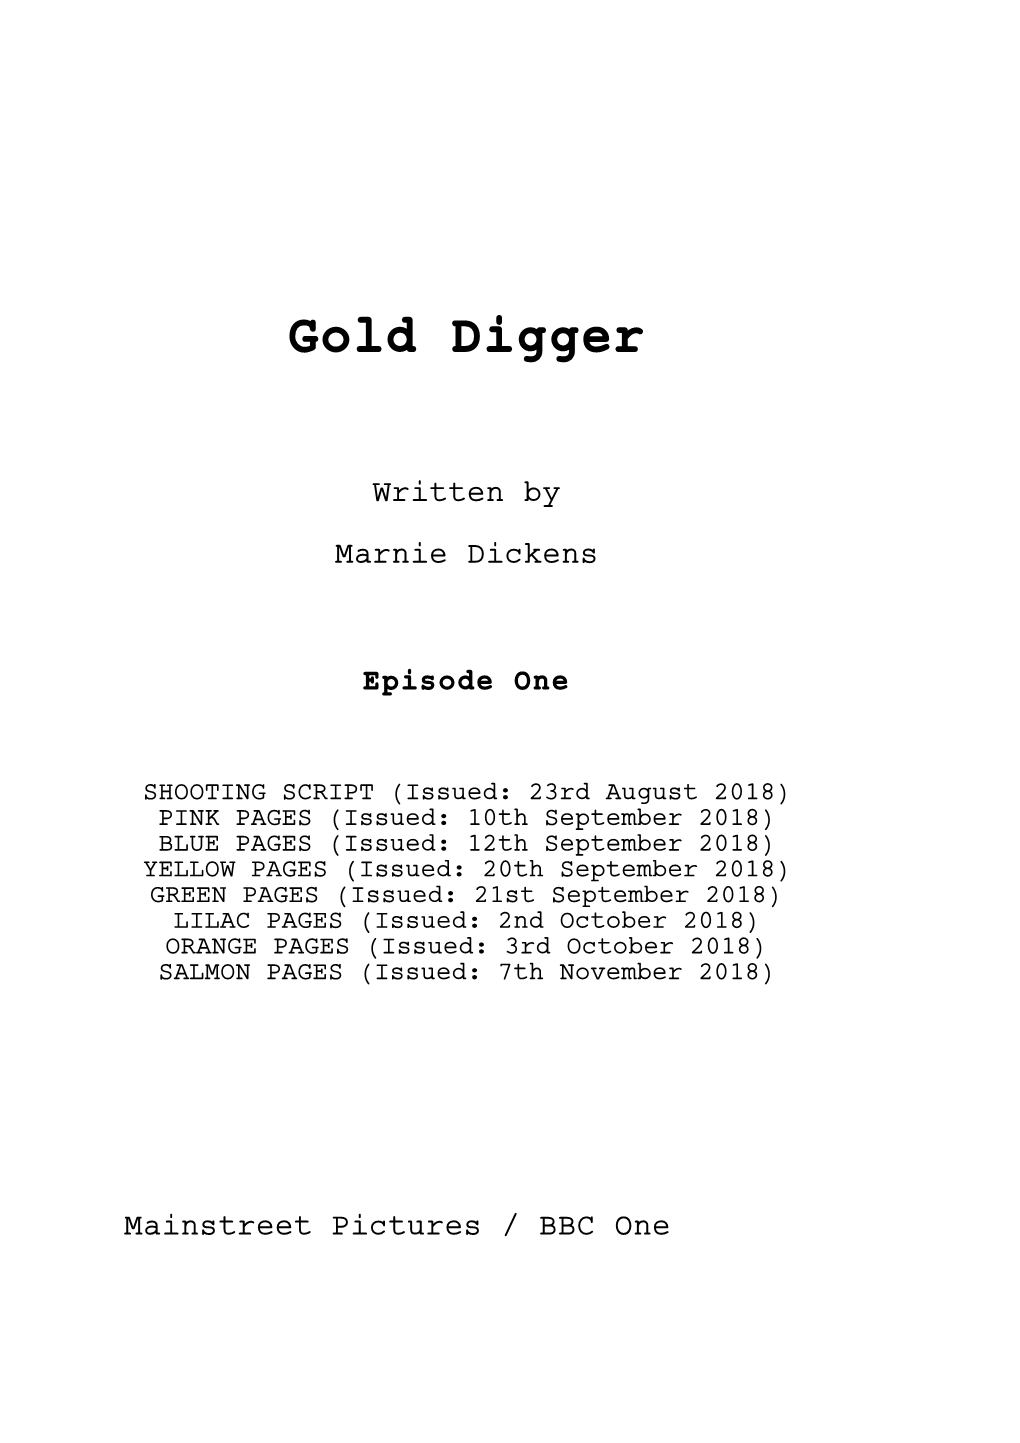 GOLD DIGGER Episode